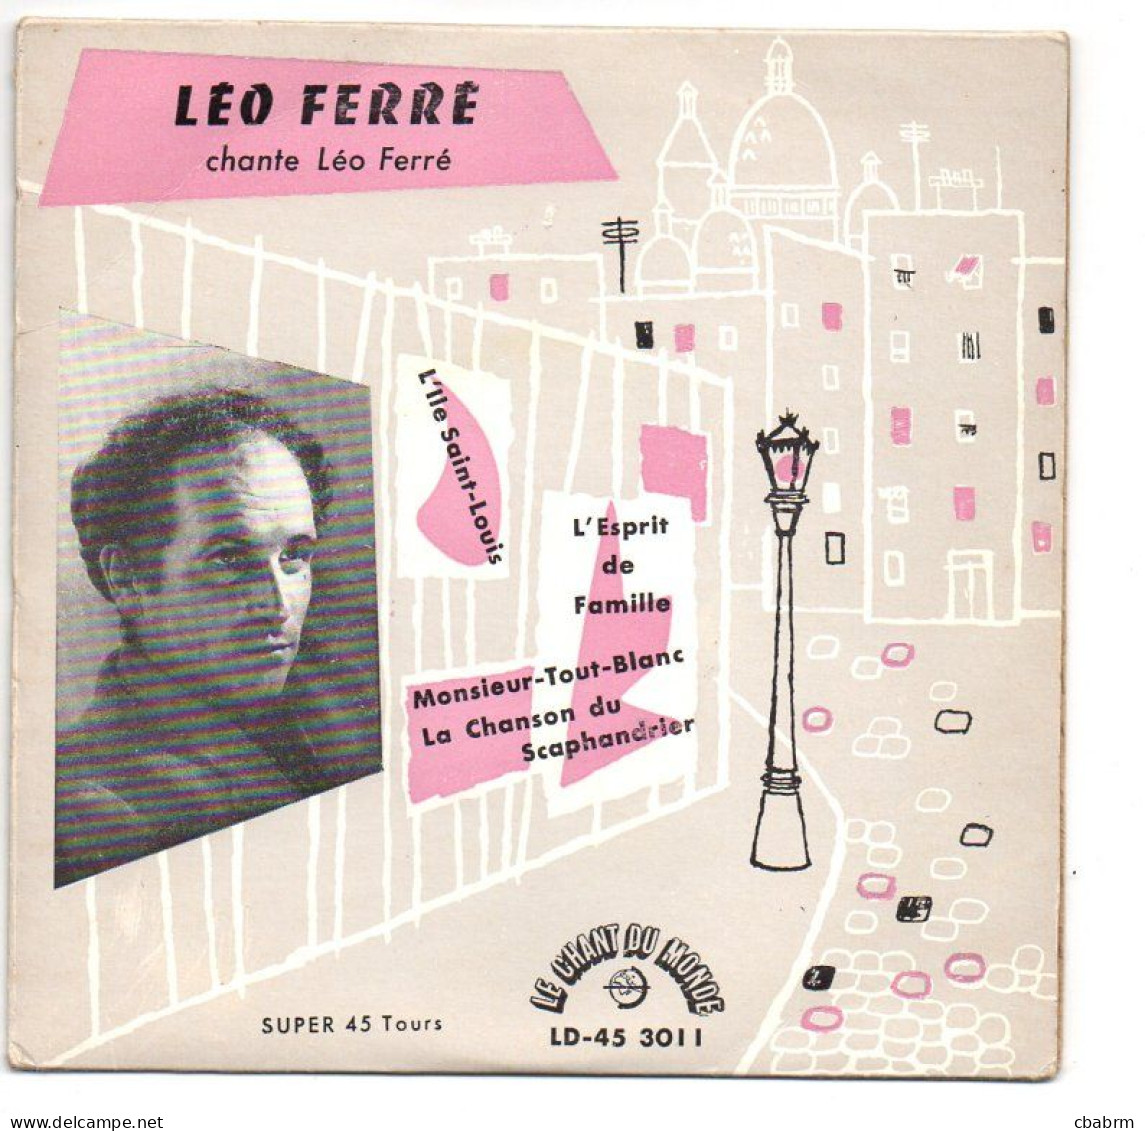 EP 45 TOURS LEO FERRE L'ILE SAINT LOUIS 1956 FRANCE Le Chant Du Monde ‎ 45 3011 - Otros - Canción Francesa